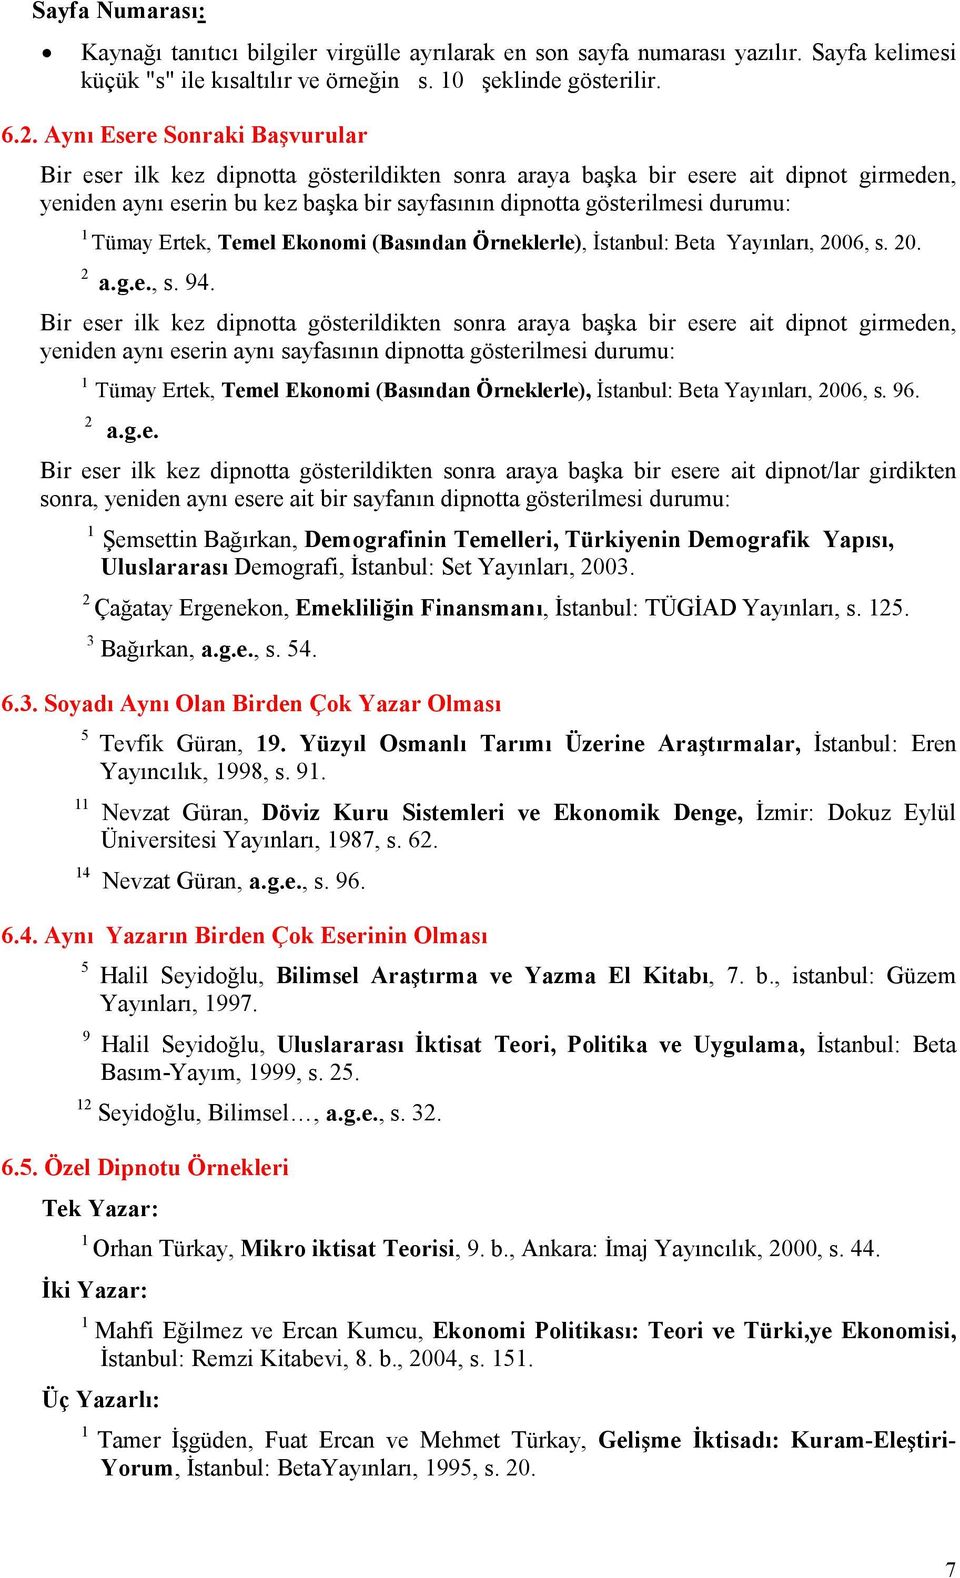 Tümay Ertek, Temel Ekonomi (Basından Örneklerle), Đstanbul: Beta Yayınları, 2006, s. 20. 2 a.g.e., s. 94.